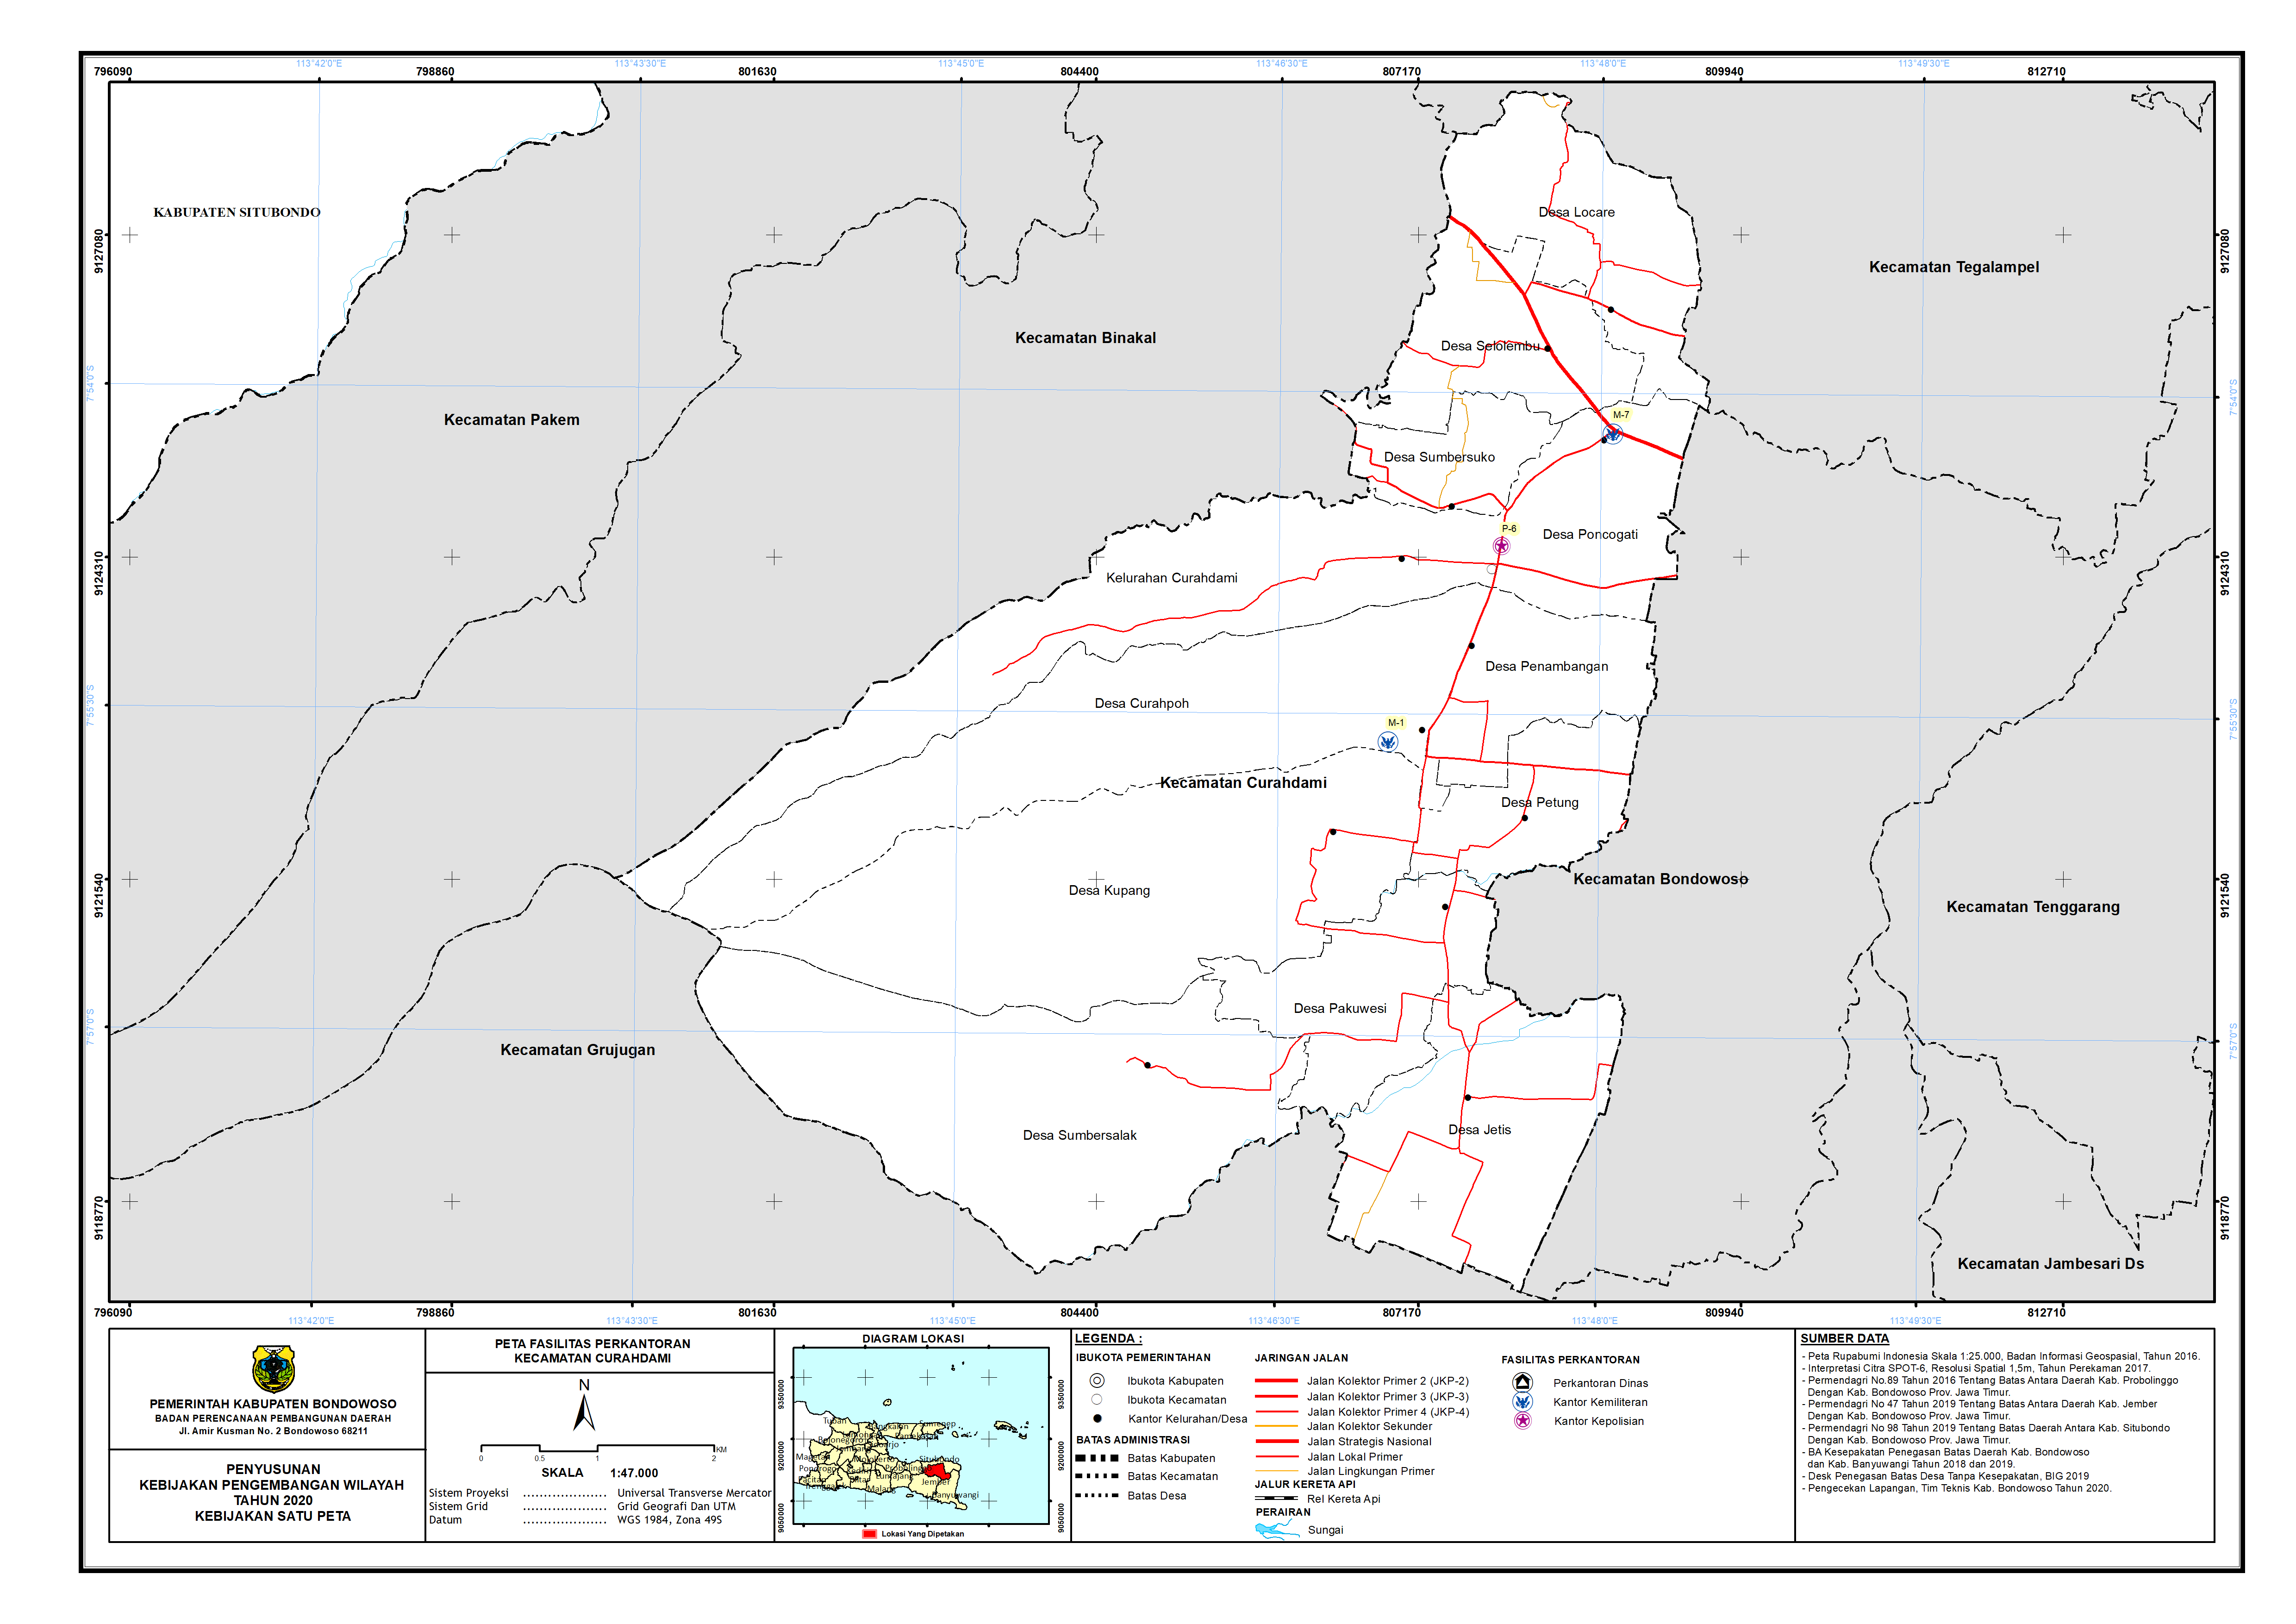 Peta Persebaran Perkantoran Kecamatan Curahdami.png